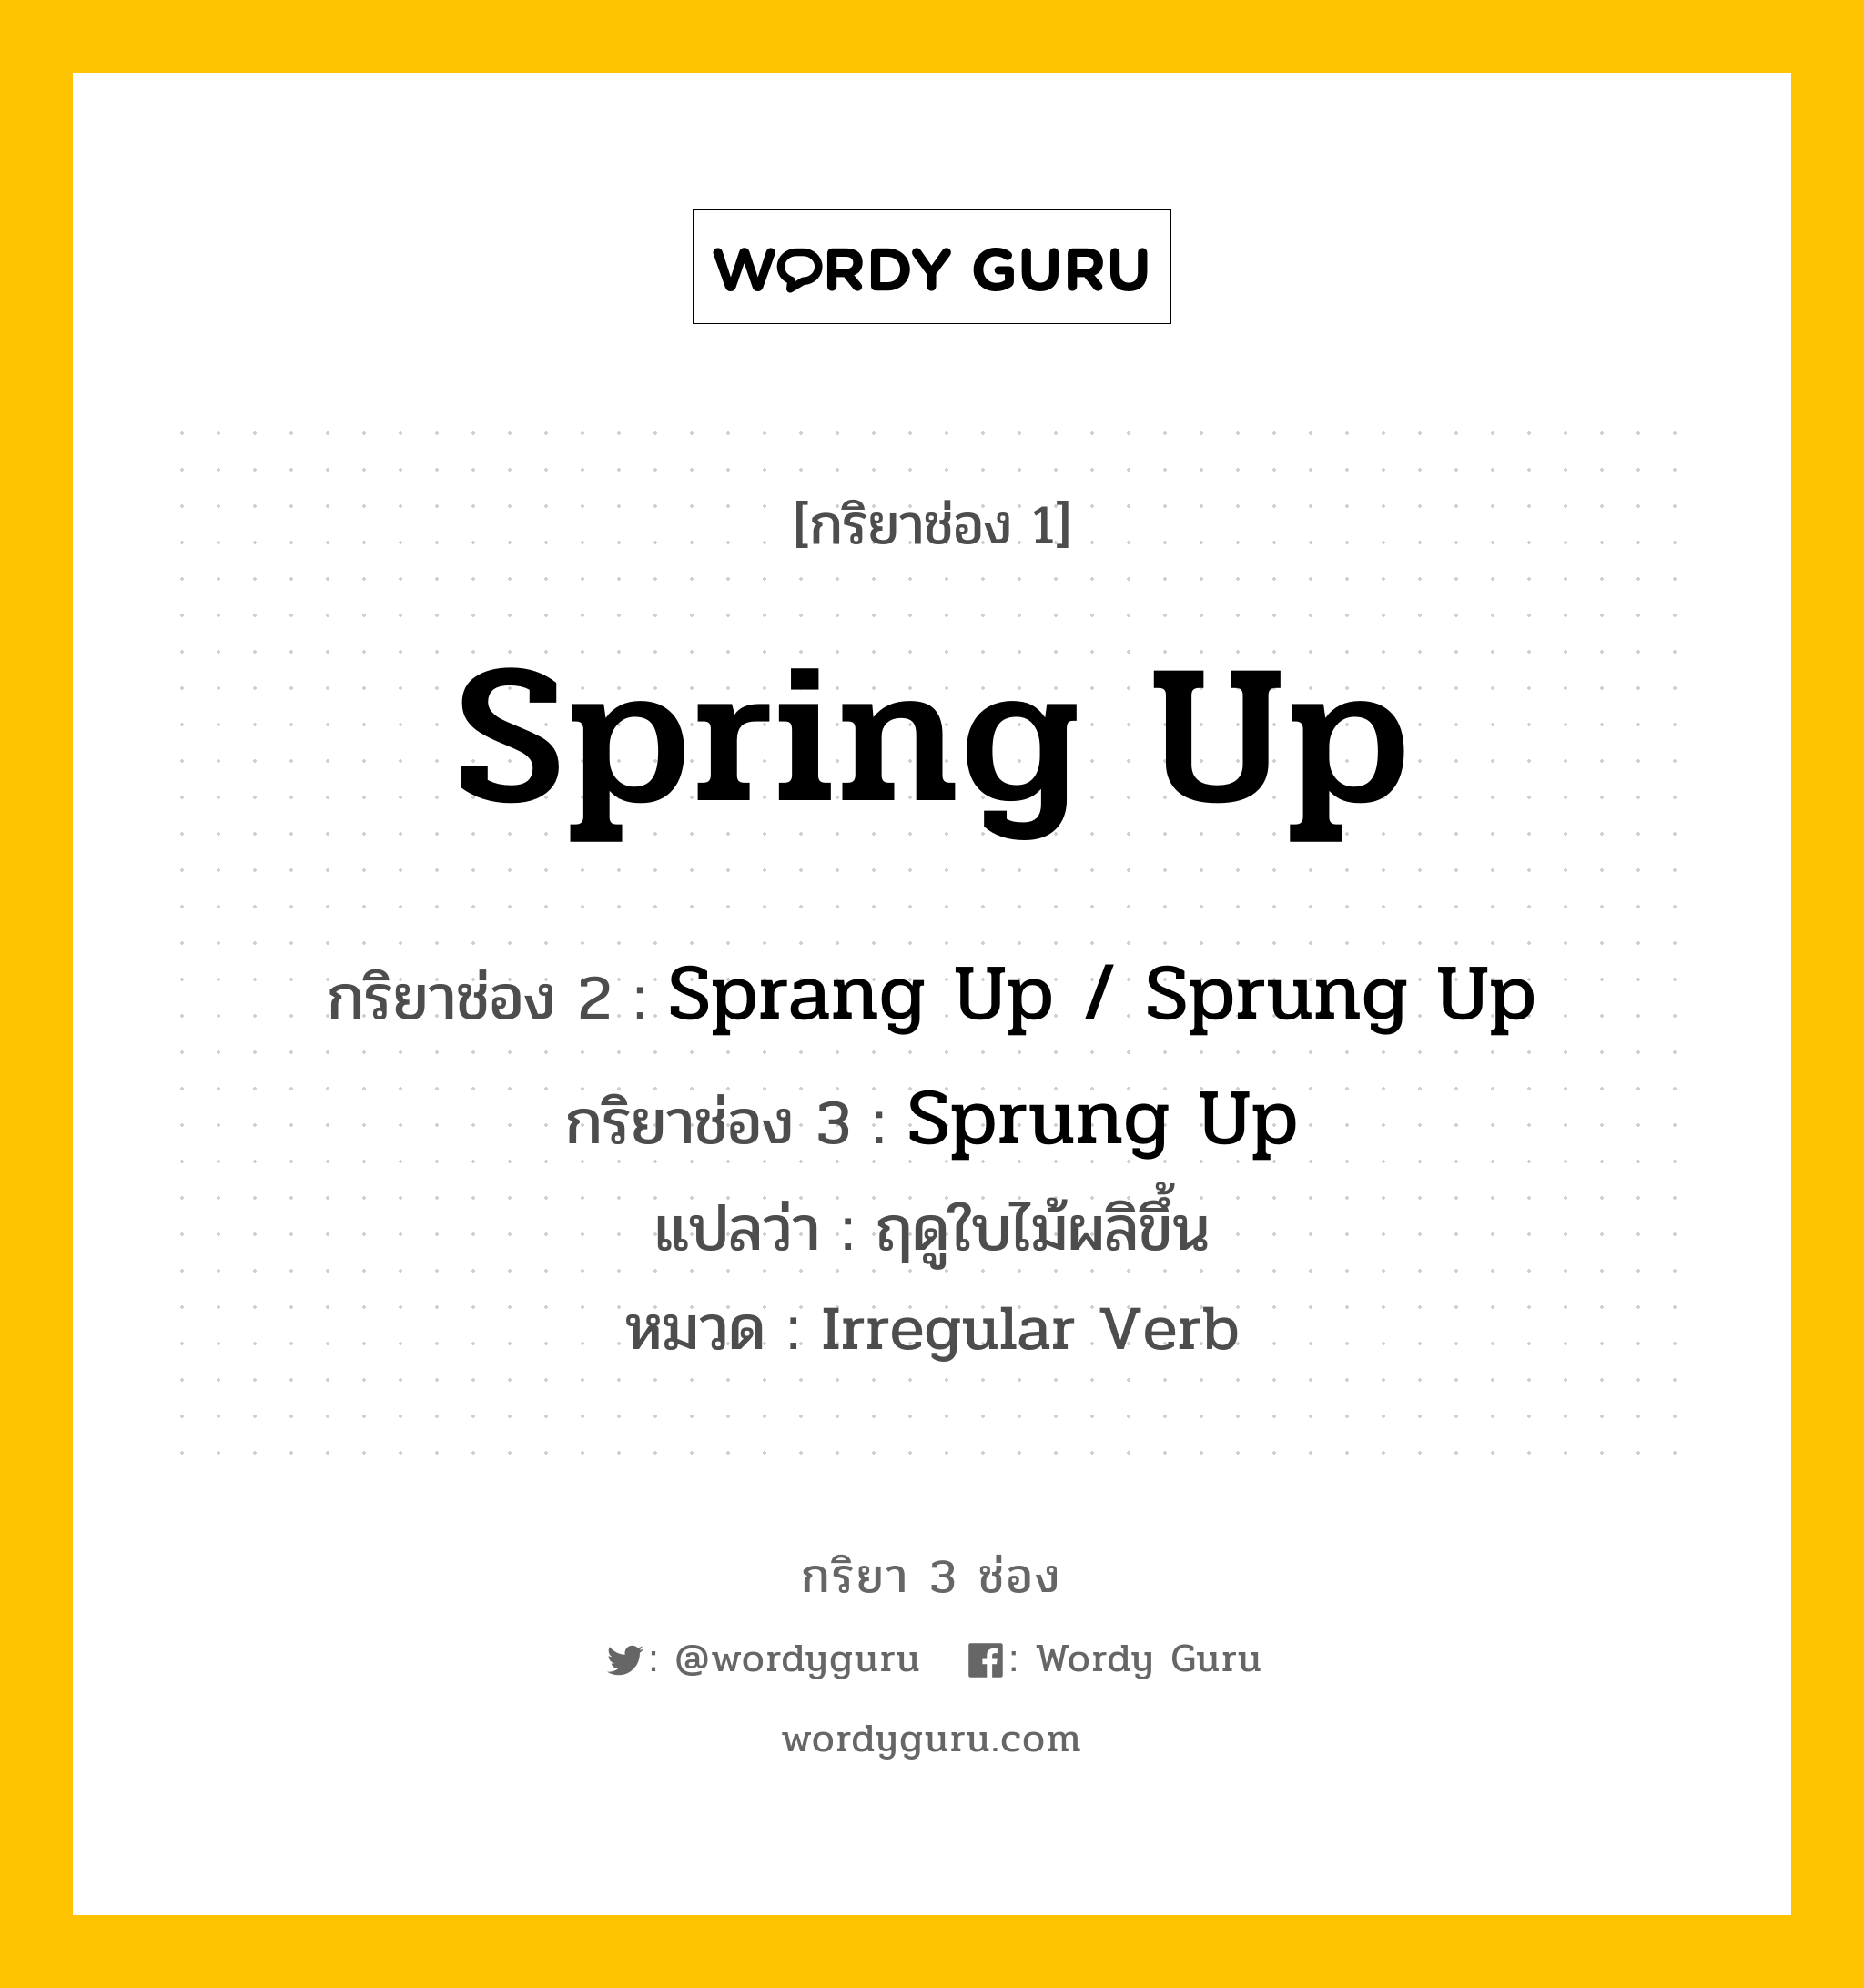 กริยา 3 ช่อง: Spring Up ช่อง 2 Spring Up ช่อง 3 คืออะไร, กริยาช่อง 1 Spring Up กริยาช่อง 2 Sprang Up / Sprung Up กริยาช่อง 3 Sprung Up แปลว่า ฤดูใบไม้ผลิขึ้น หมวด Irregular Verb หมวด Irregular Verb